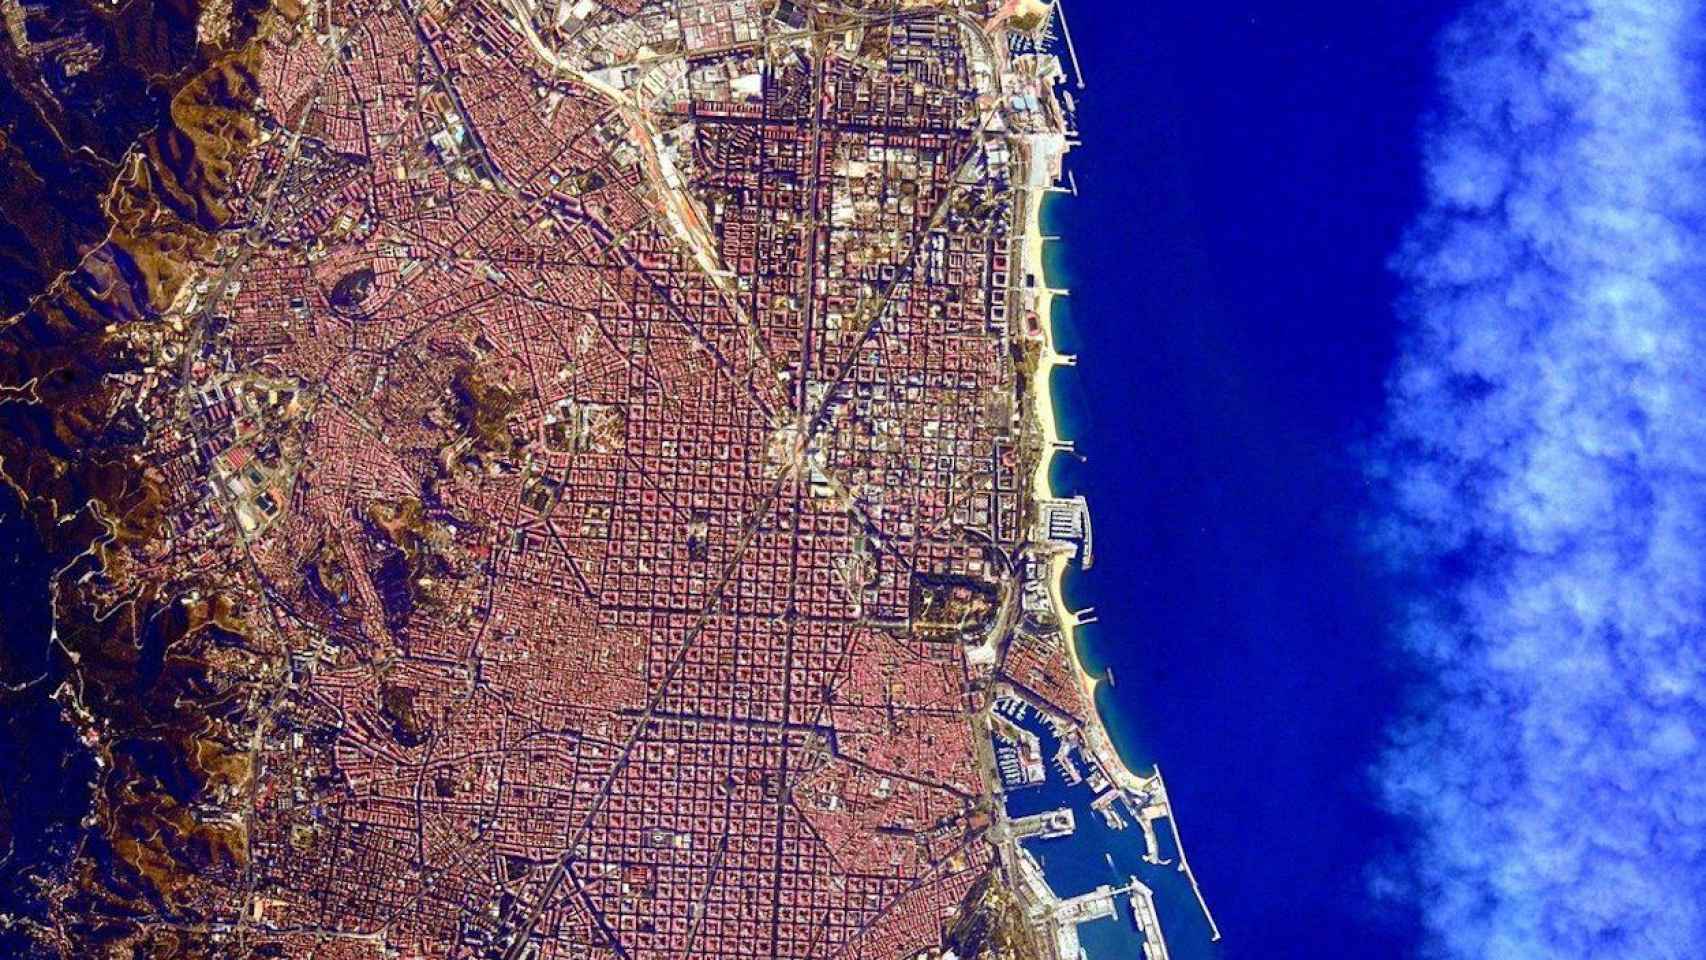 La vista de Barcelona desde el espacio realizada por la NASA / TWITTER - @JoaquimCampa